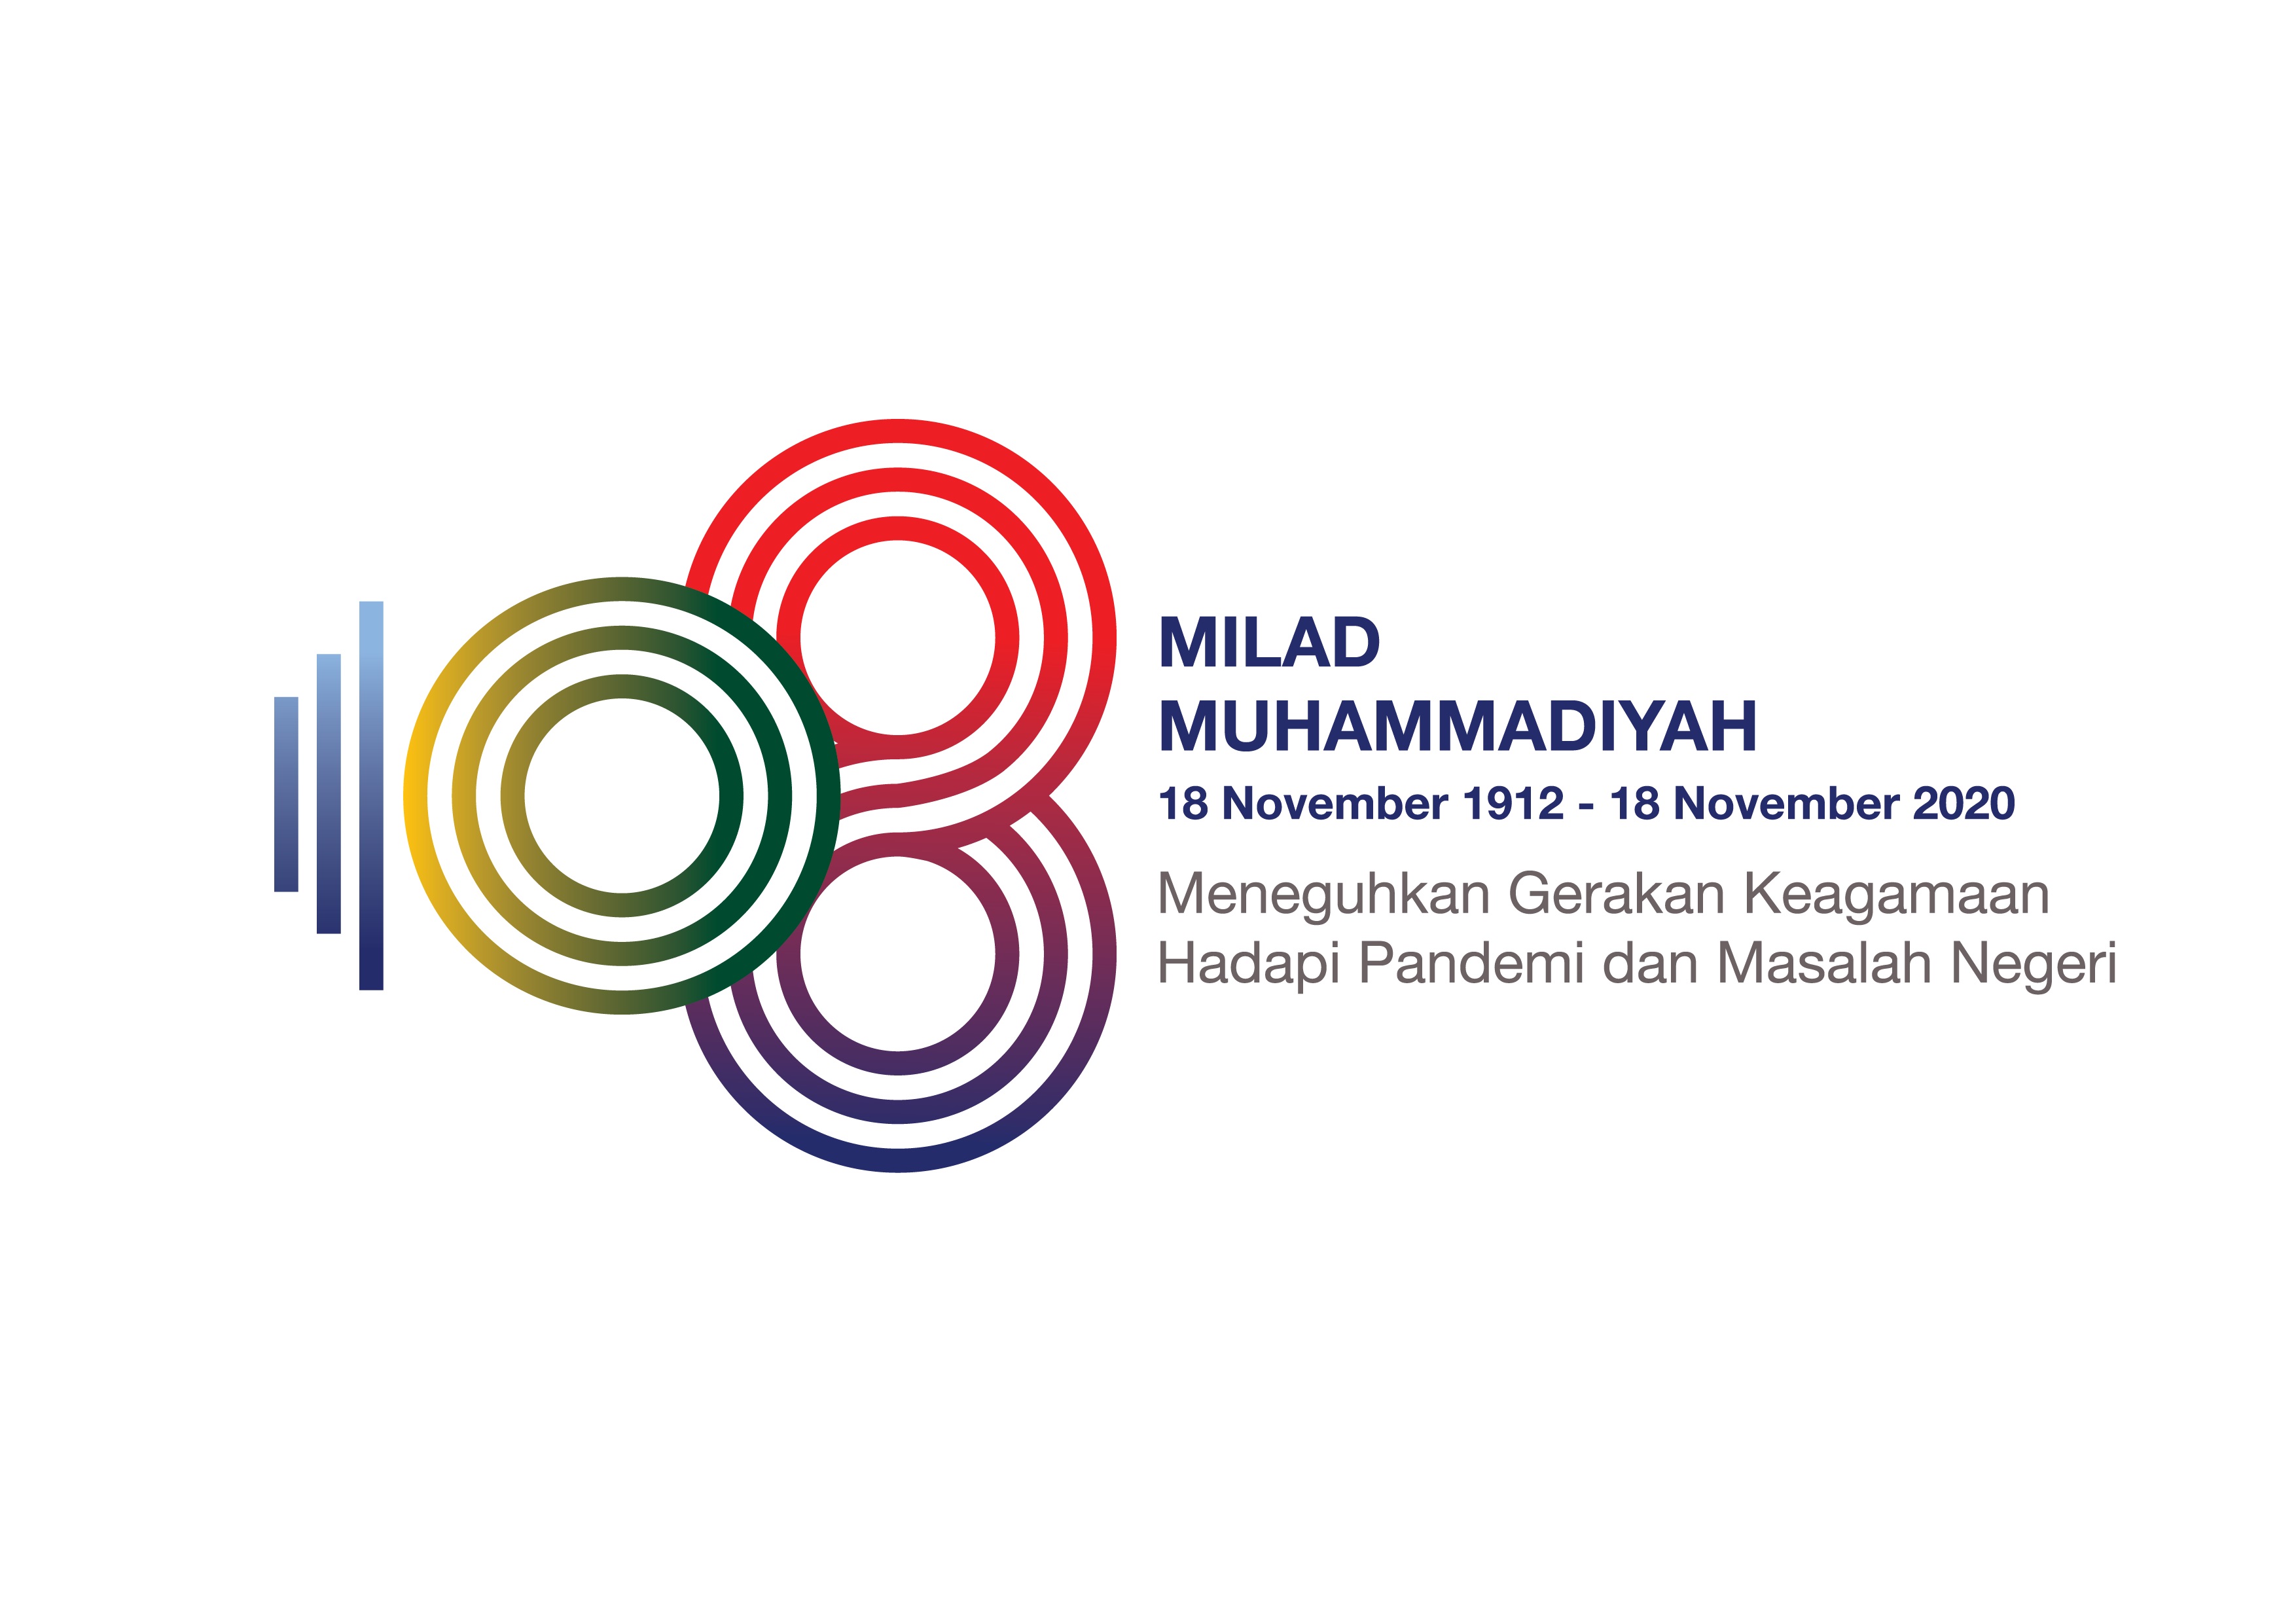 Milad ke-108, Muhammadiyah Usung Tema Meneguhkan Gerakan Keagamaan Hadapi Pandemi dan Masalah Negeri